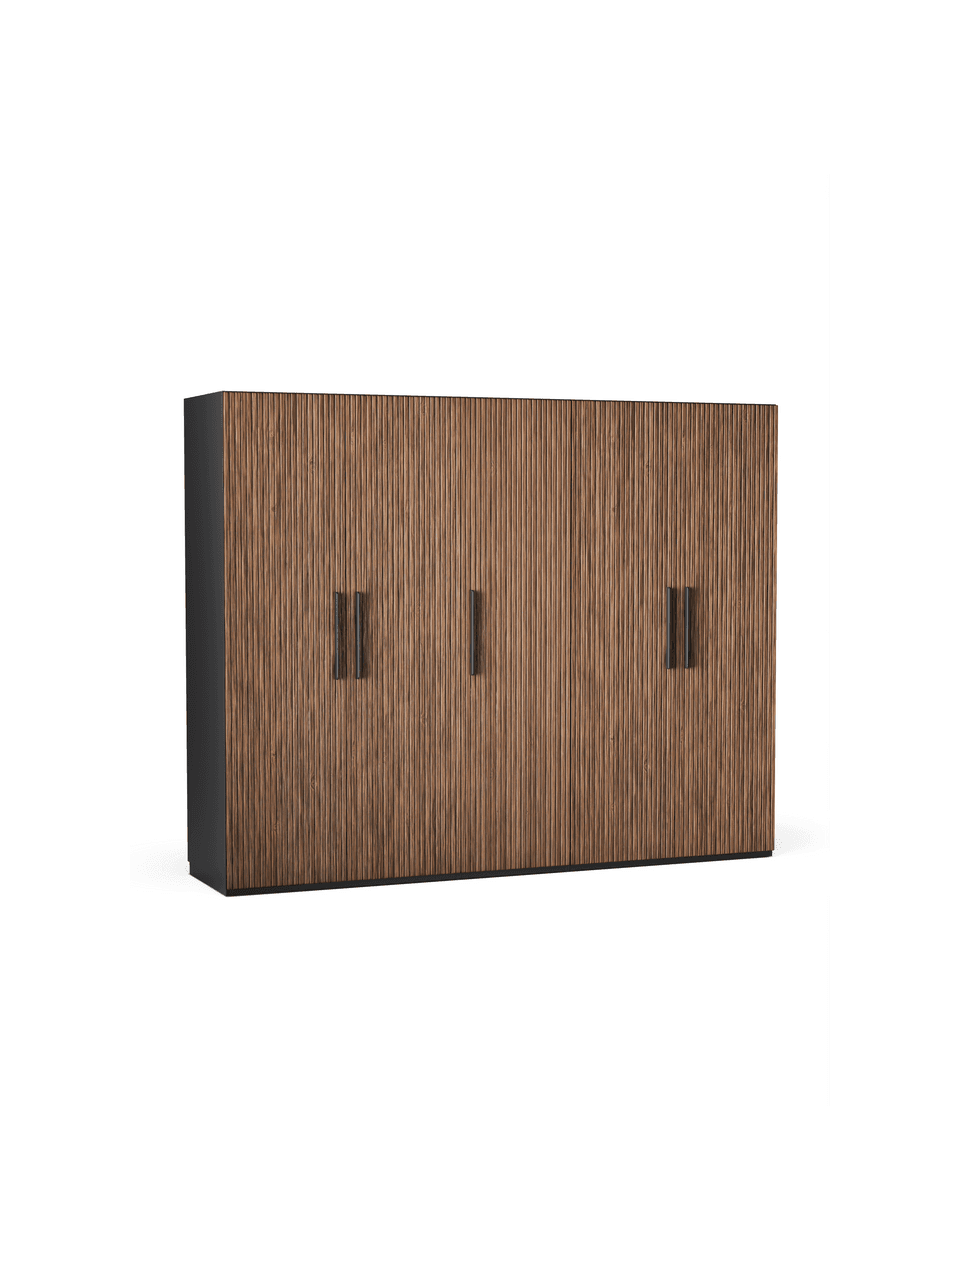 Szafa modułowa Simone, 5-drzwiowa, różne warianty, Korpus: płyta wiórowa z certyfika, Drewno naturalne, brązowy, W 236 cm, Premium